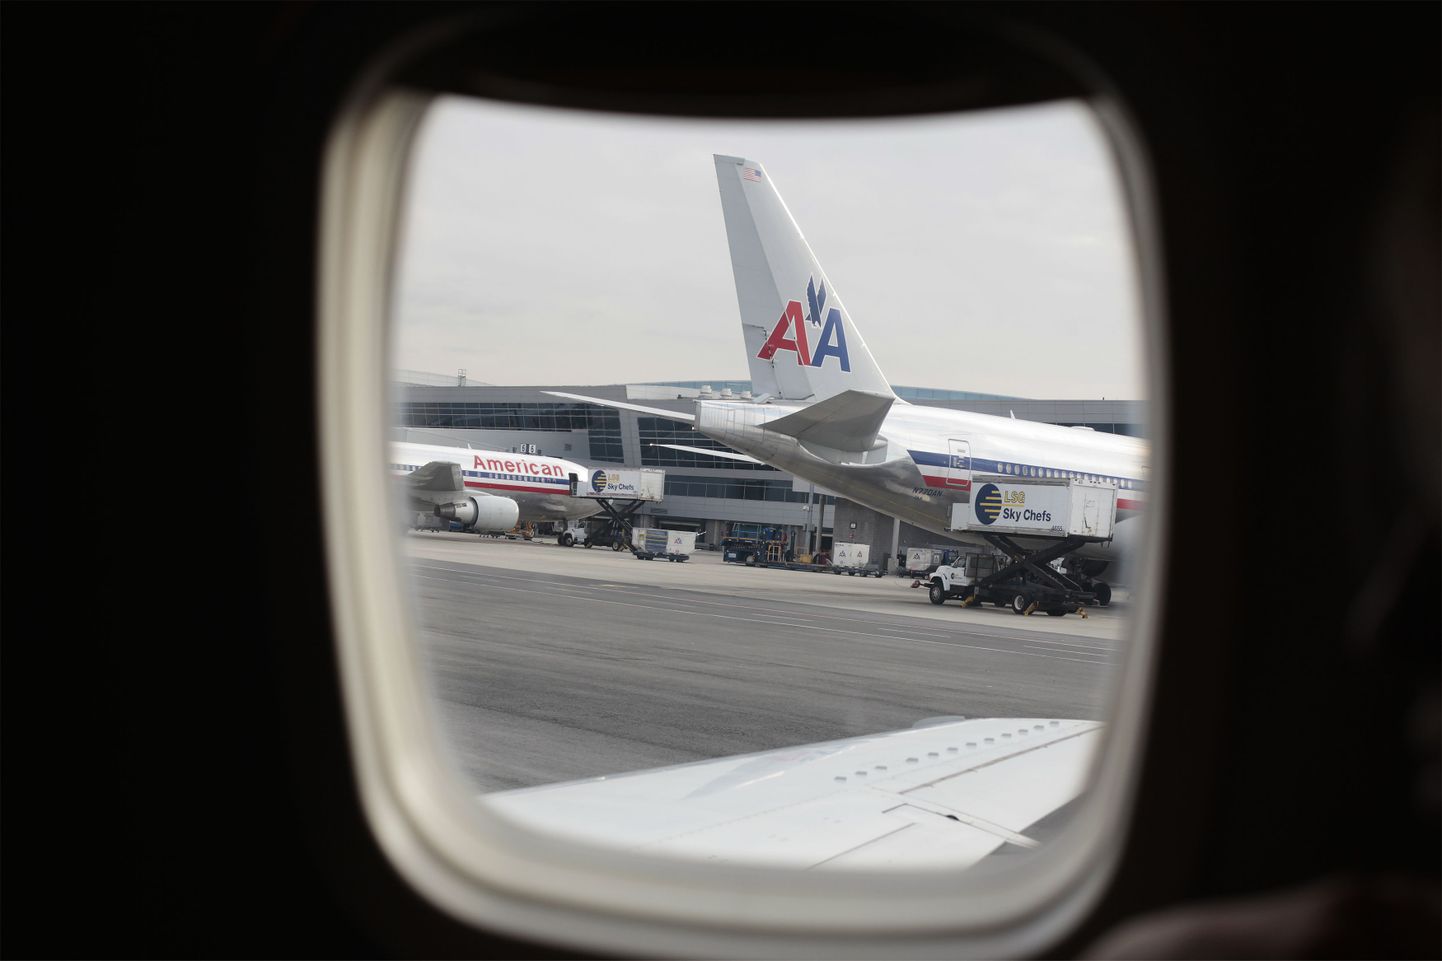 American Airlinesi lennuk oli sunnitud tegema graafikuvälise maandumise.